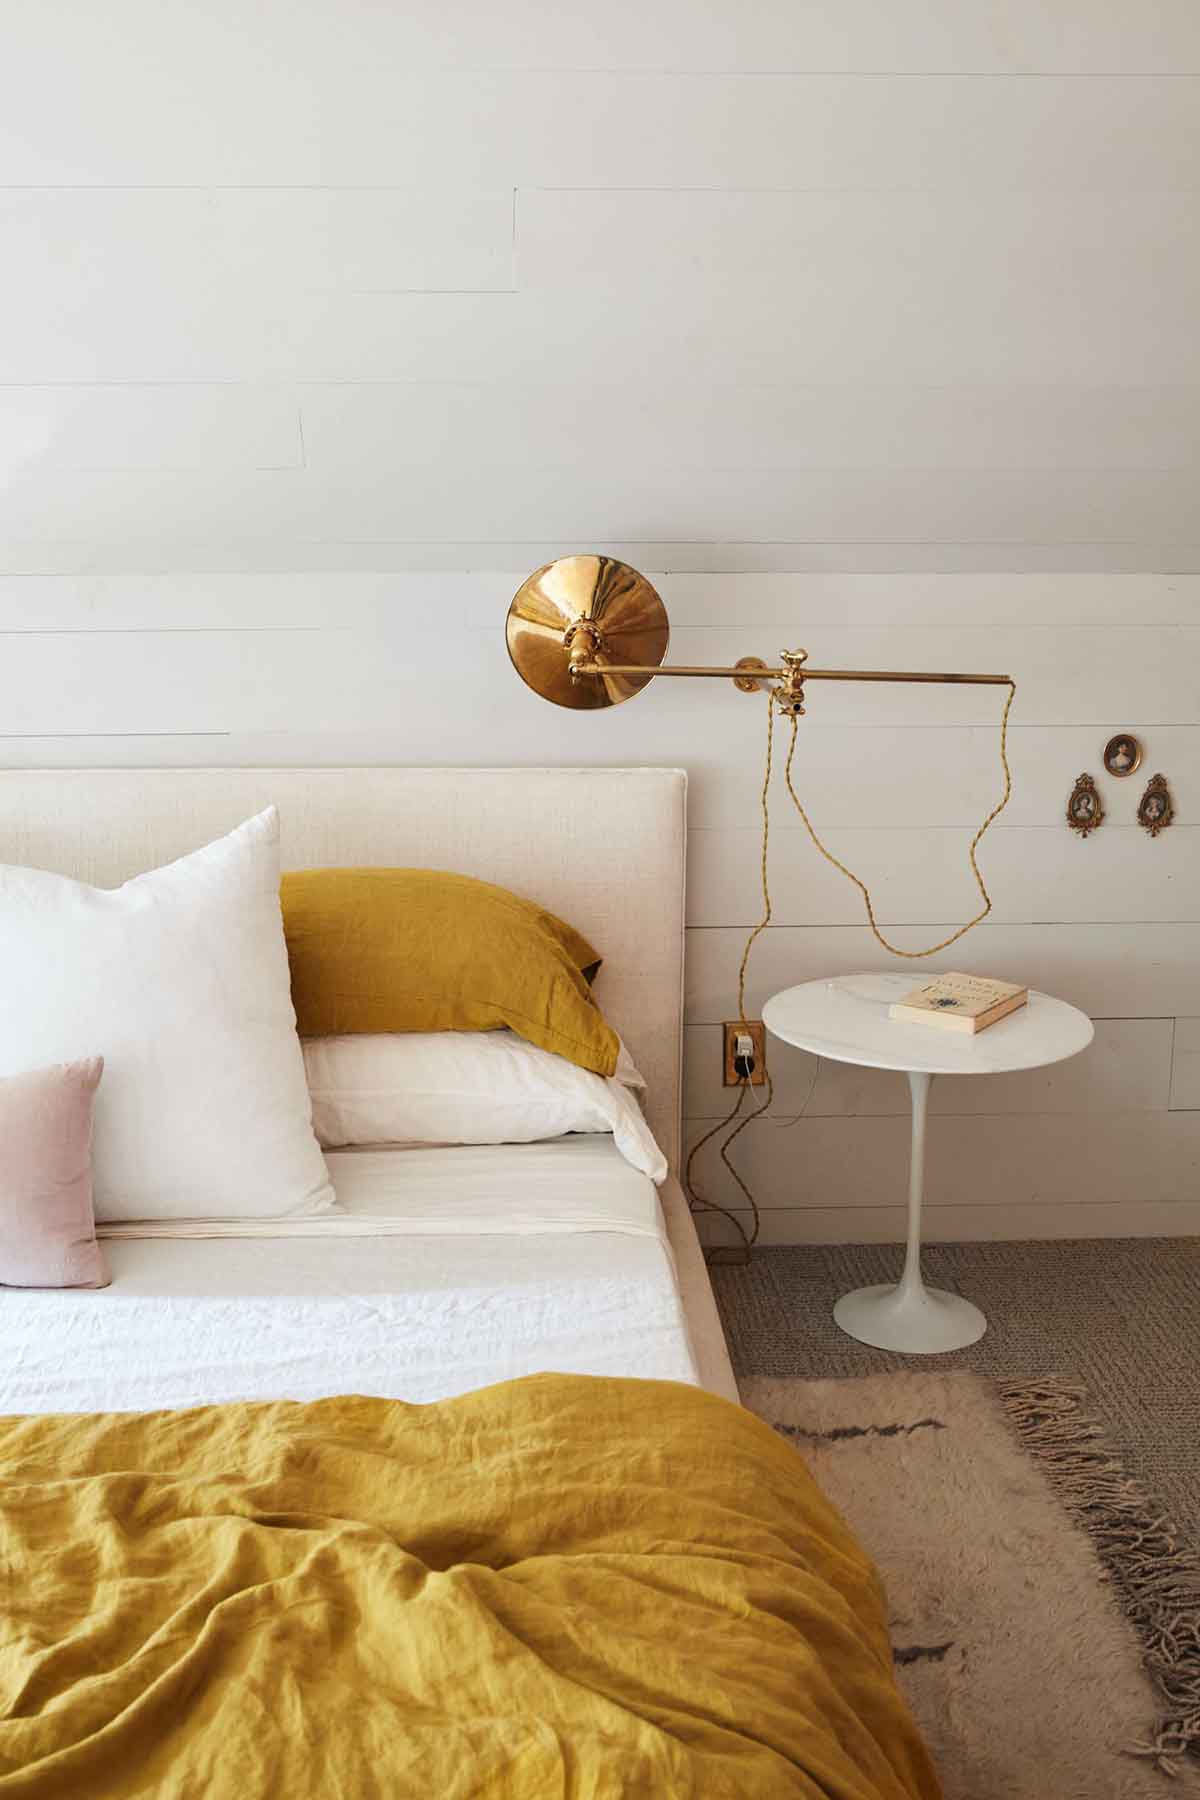 دکوراسیون سفید طلایی اتاق خواب مدرن با اکسسوری طلایی و روتختی زرد خردلی